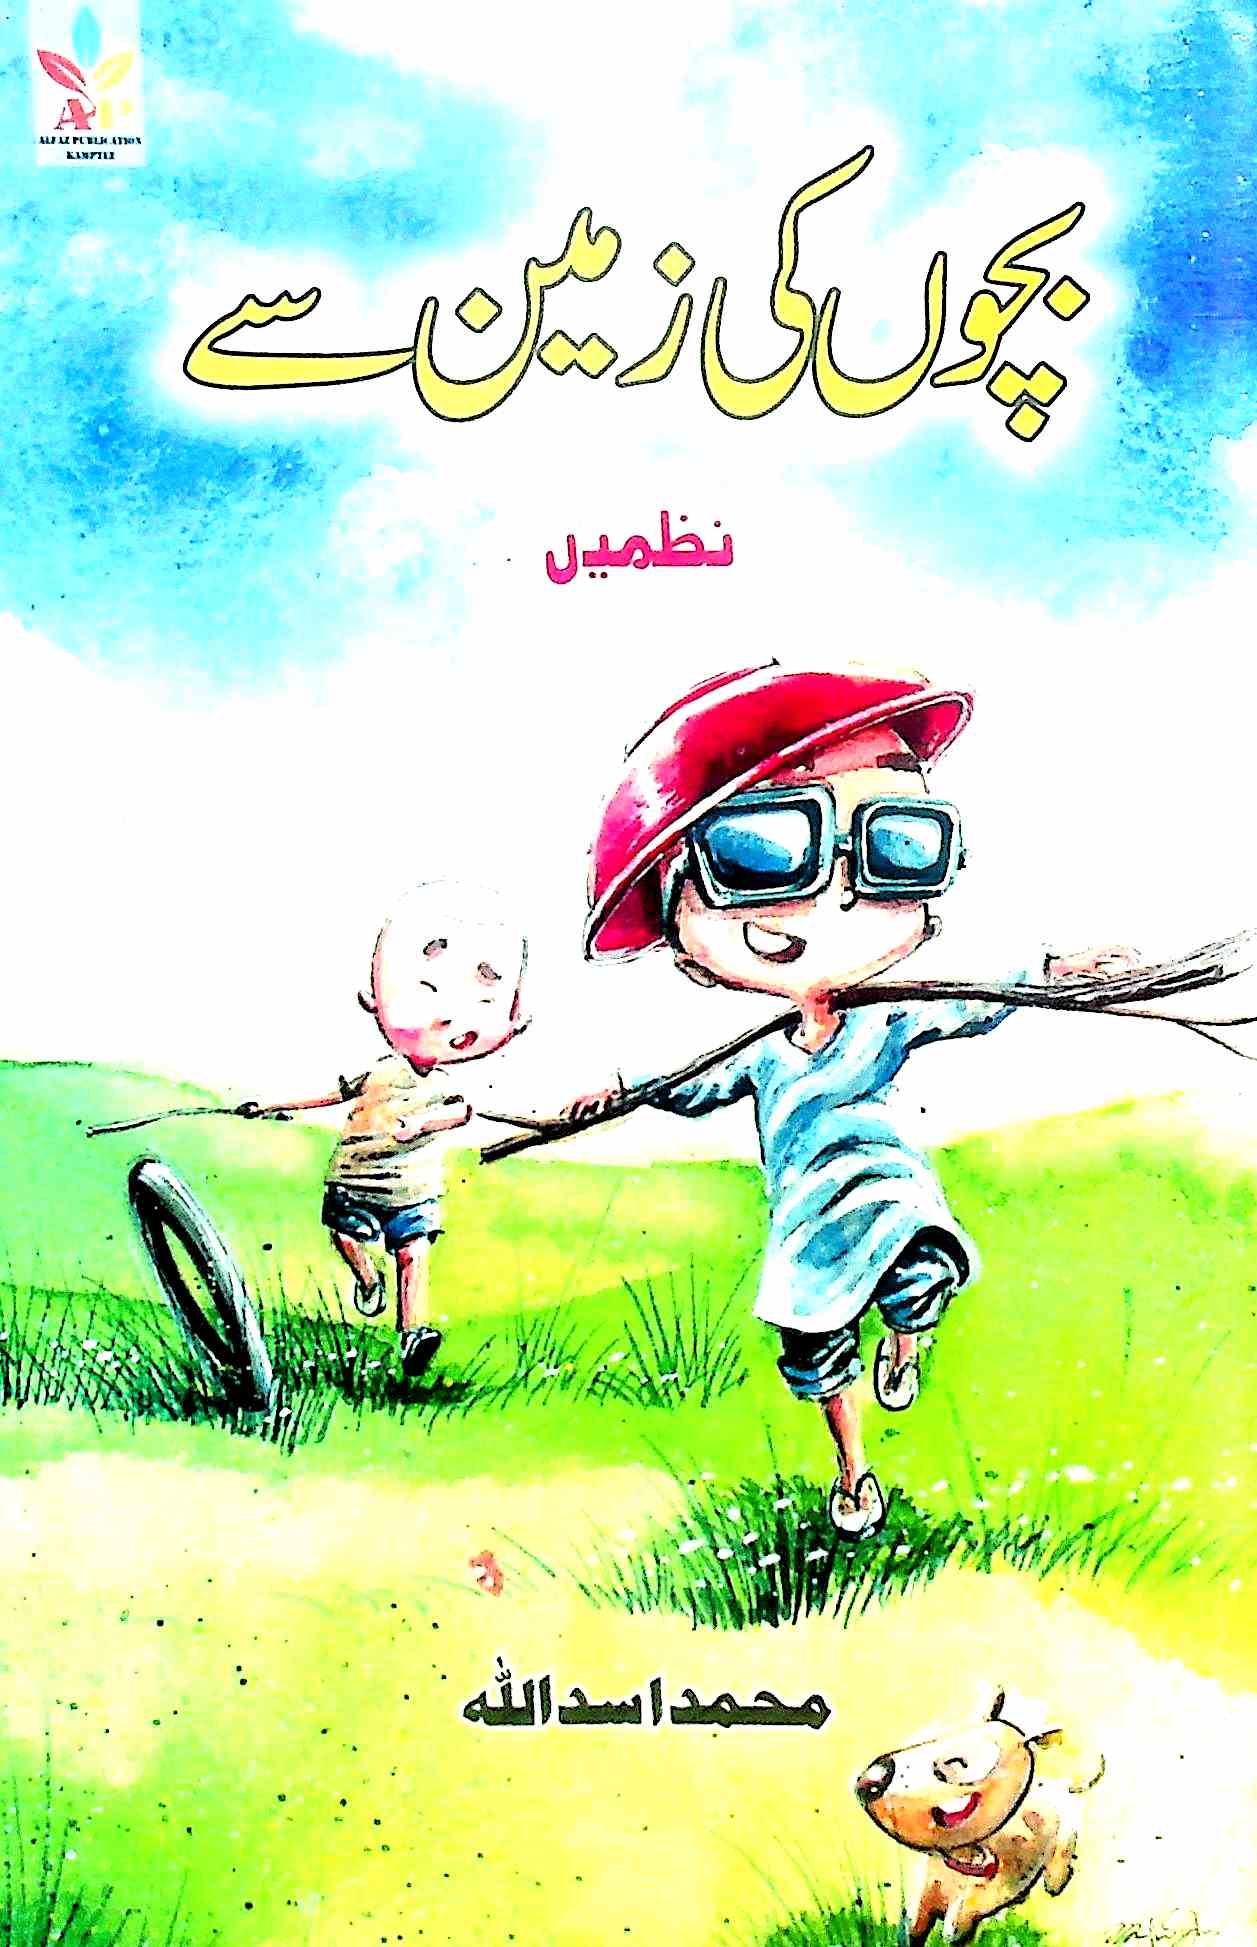 Urdu Books of Mohammad Asadullah | Rekhta